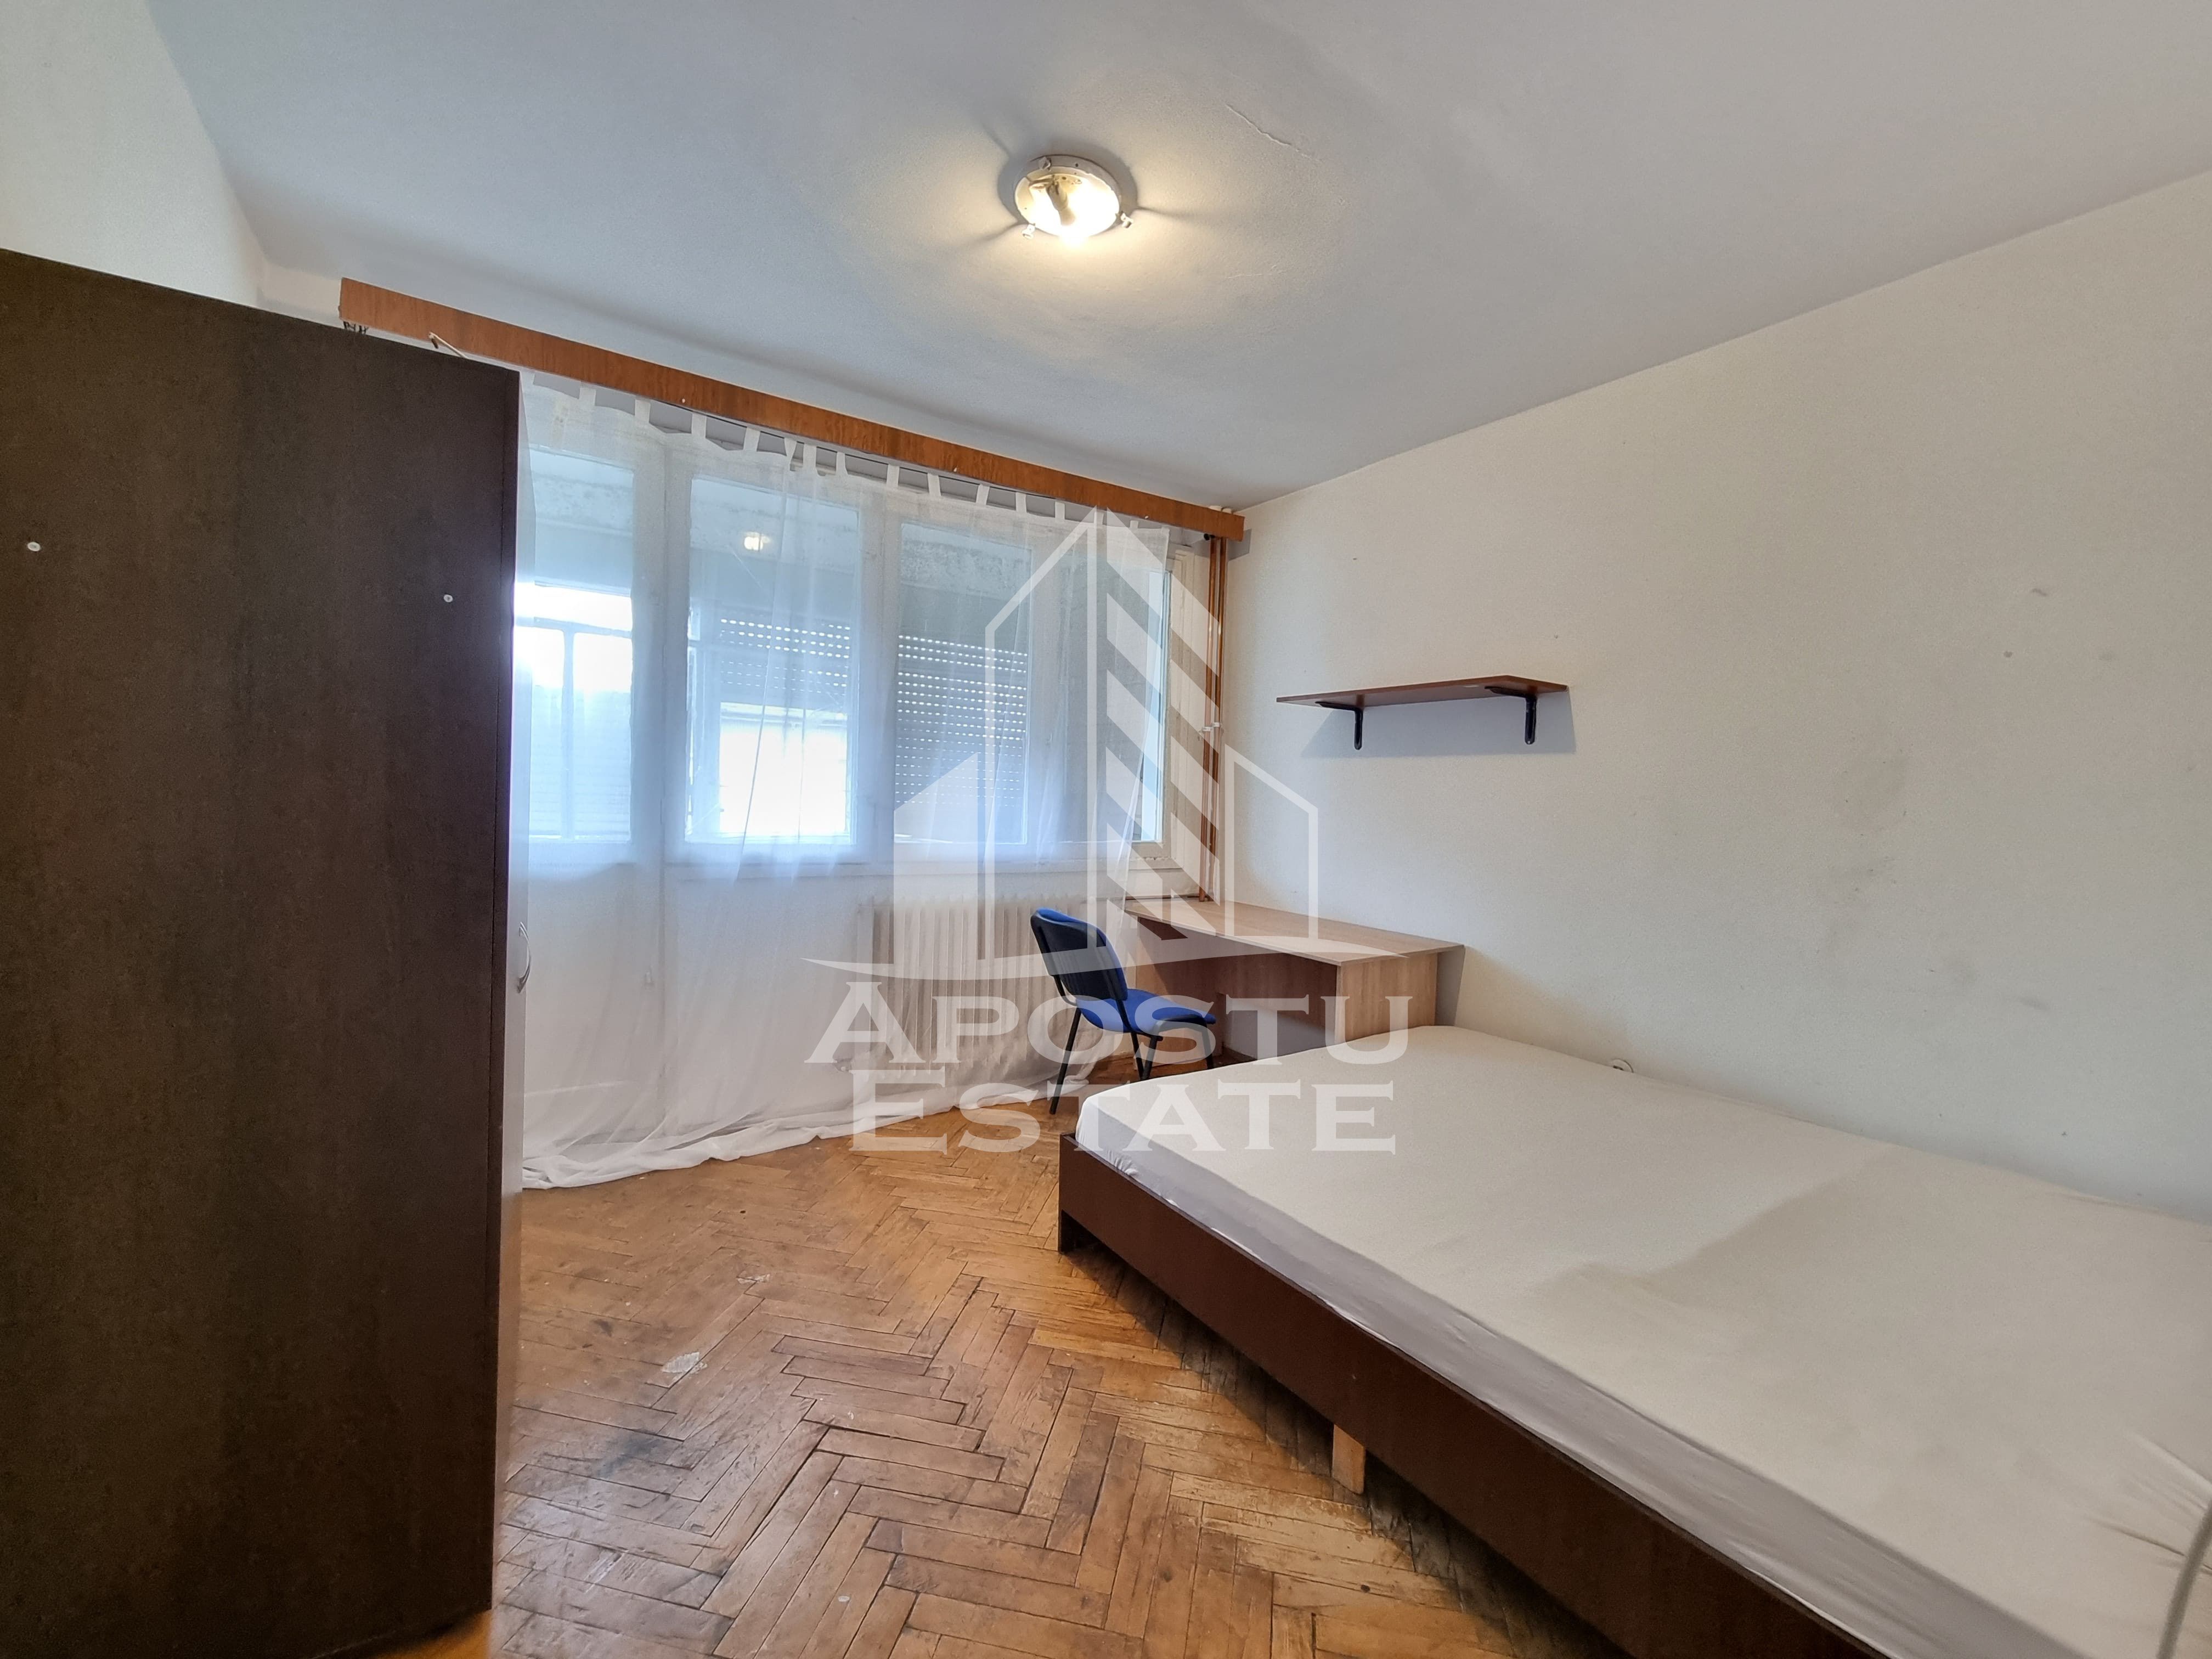 Apartament cu 2 camere, Ideal pentru 2 studenti,  zona Gheorghe Lazar